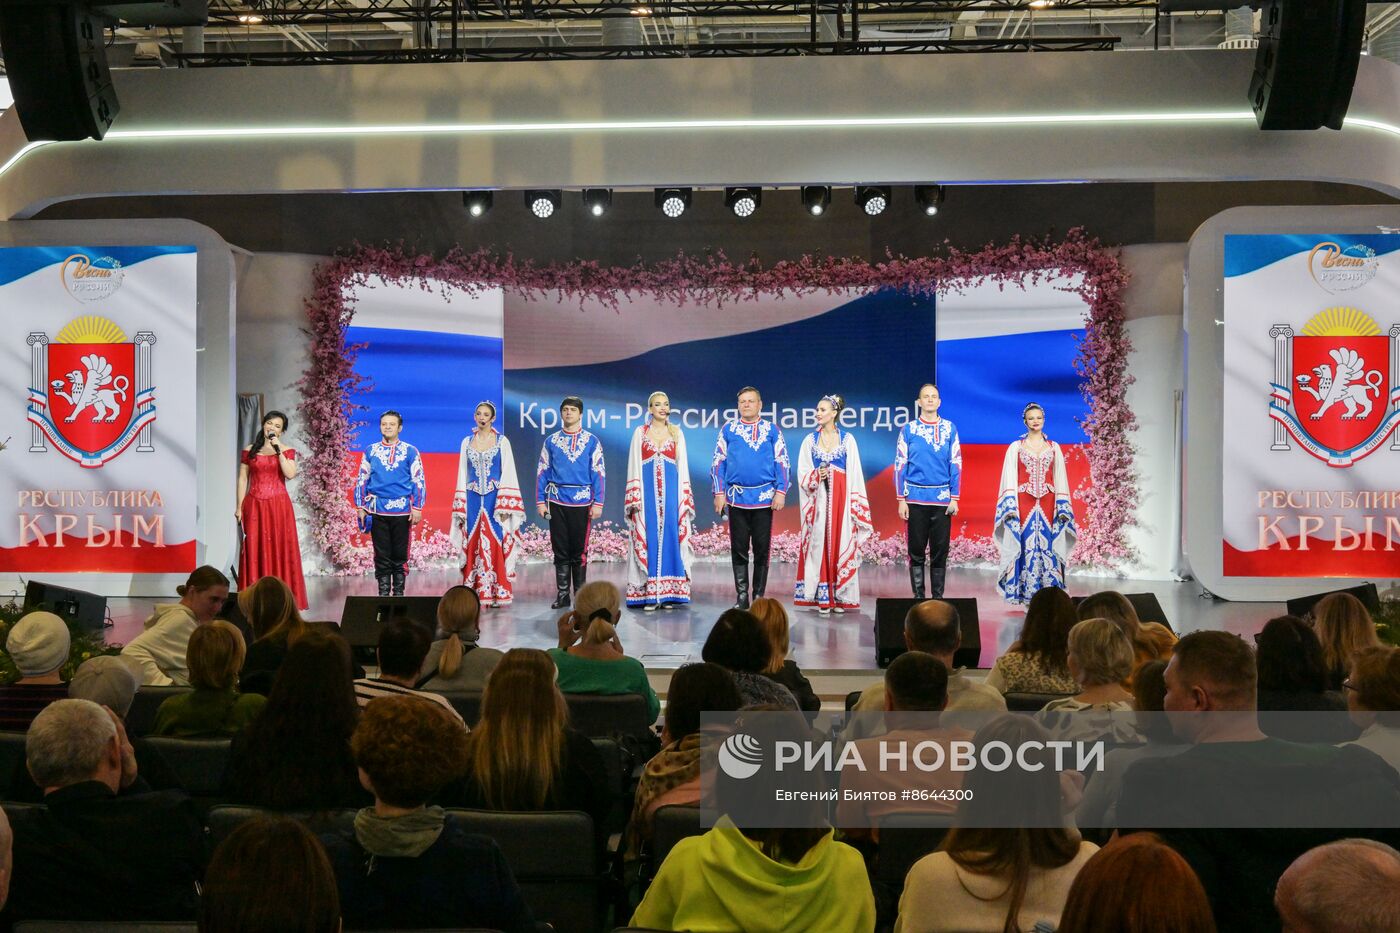 Выставка "Россия". Концерт "Крым - Россия! Навсегда"